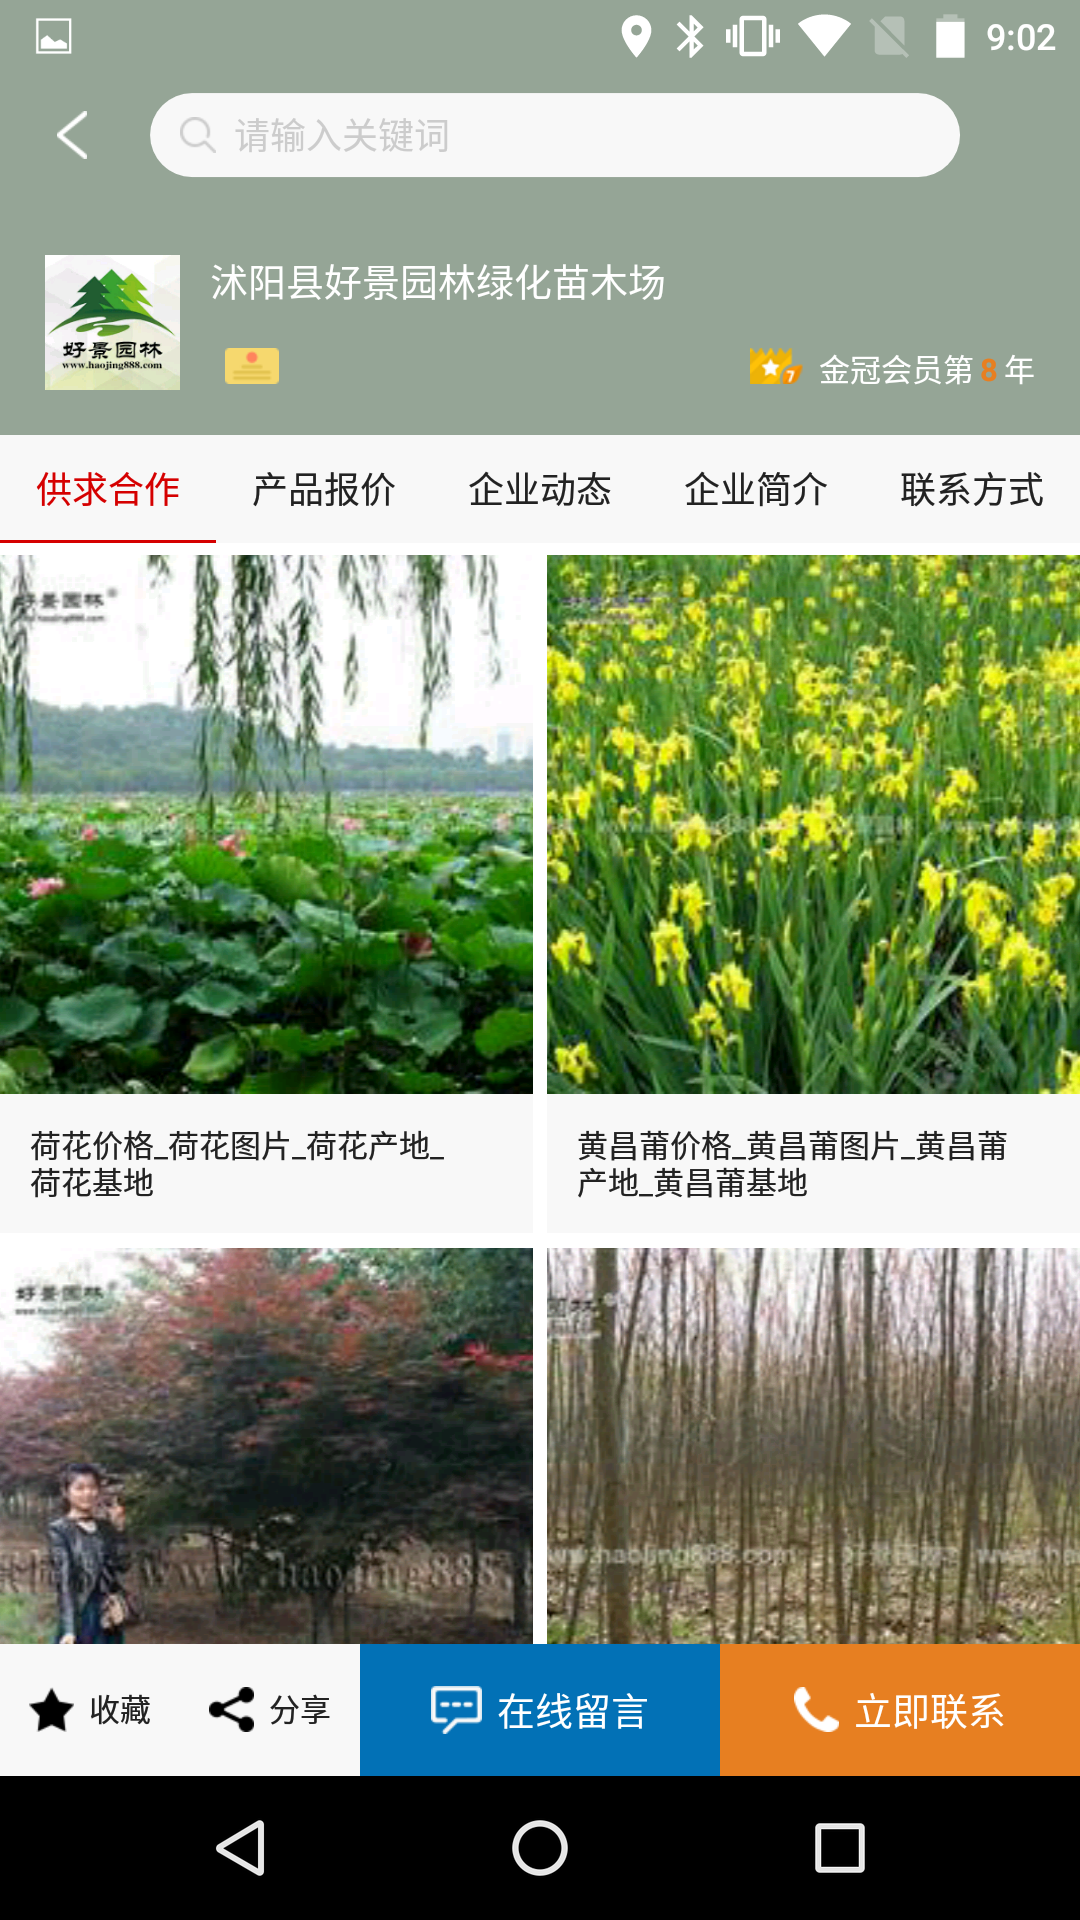 中国园林网APP